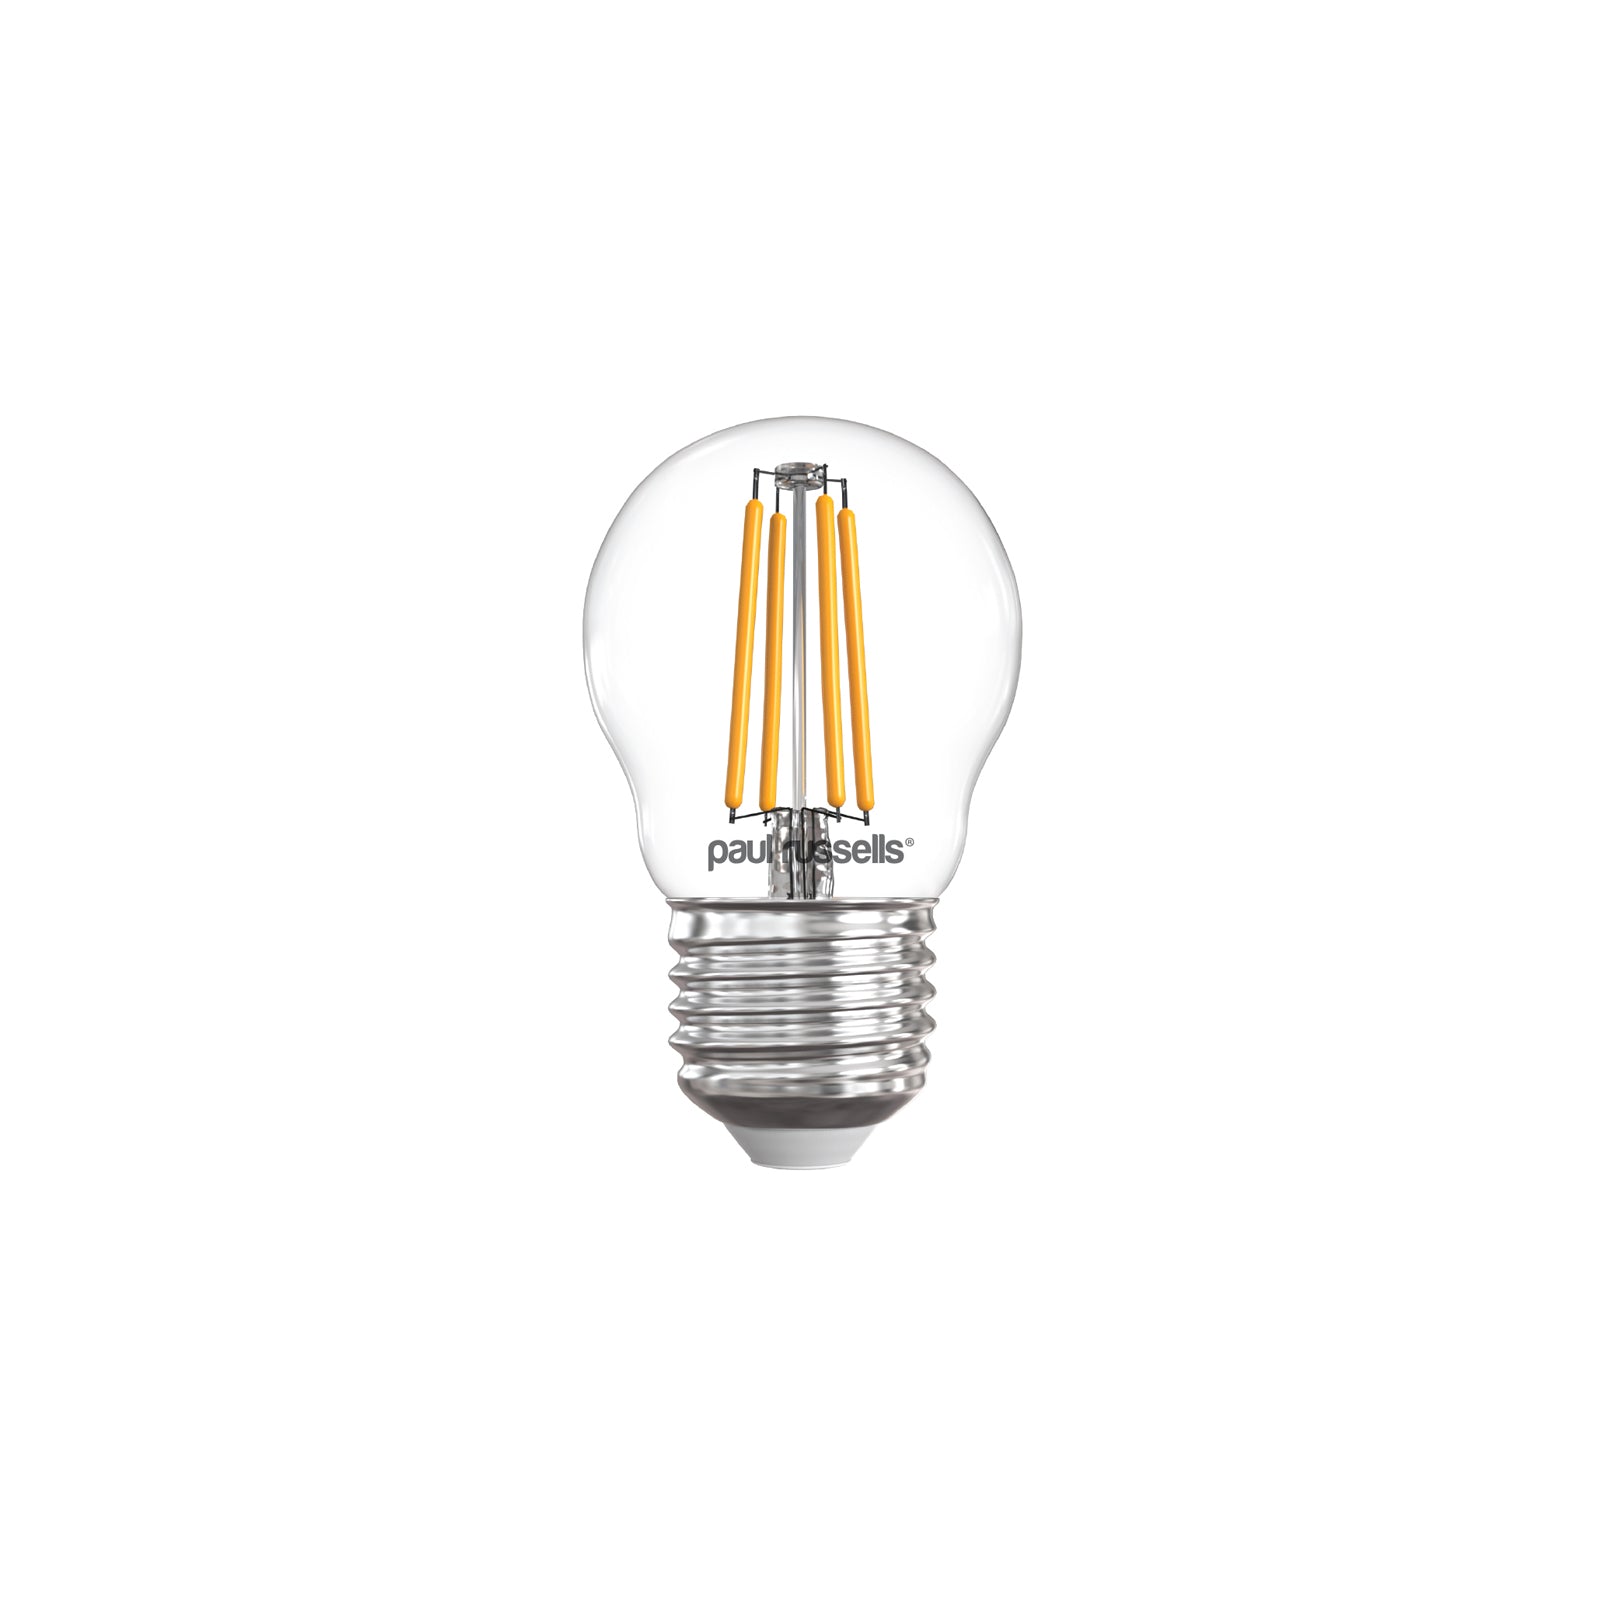 LED Filament Golf 4.5W (40w), ES/E27, 470 Lumens, Warm White(2700K), 240V